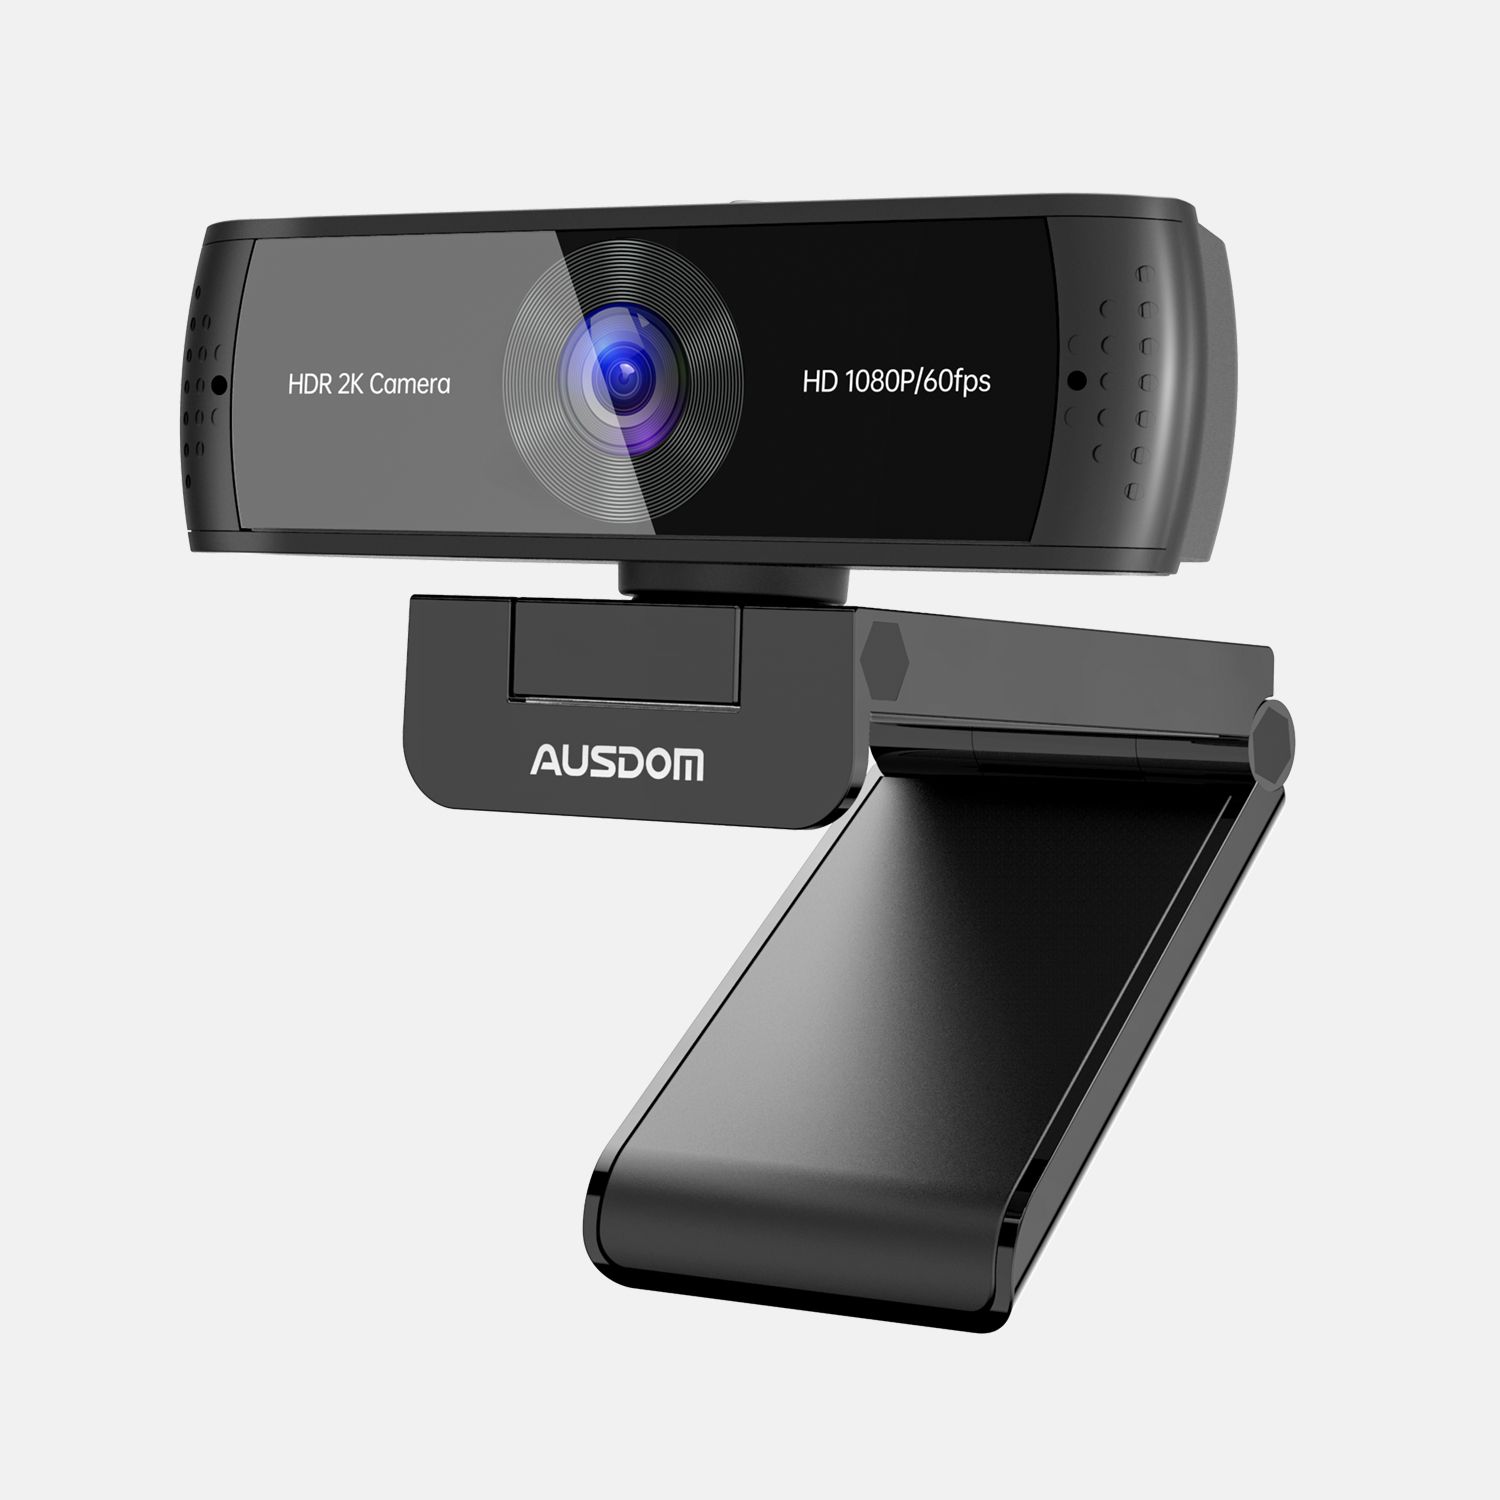 Cámara de streaming en vivo USB Webcam para llamadas de vídeo y grabación Soporte de Facebook YouTube streaming Ausdom Full HD Webcam 1080p Compatible para Mac OS Windows 10/8/7 